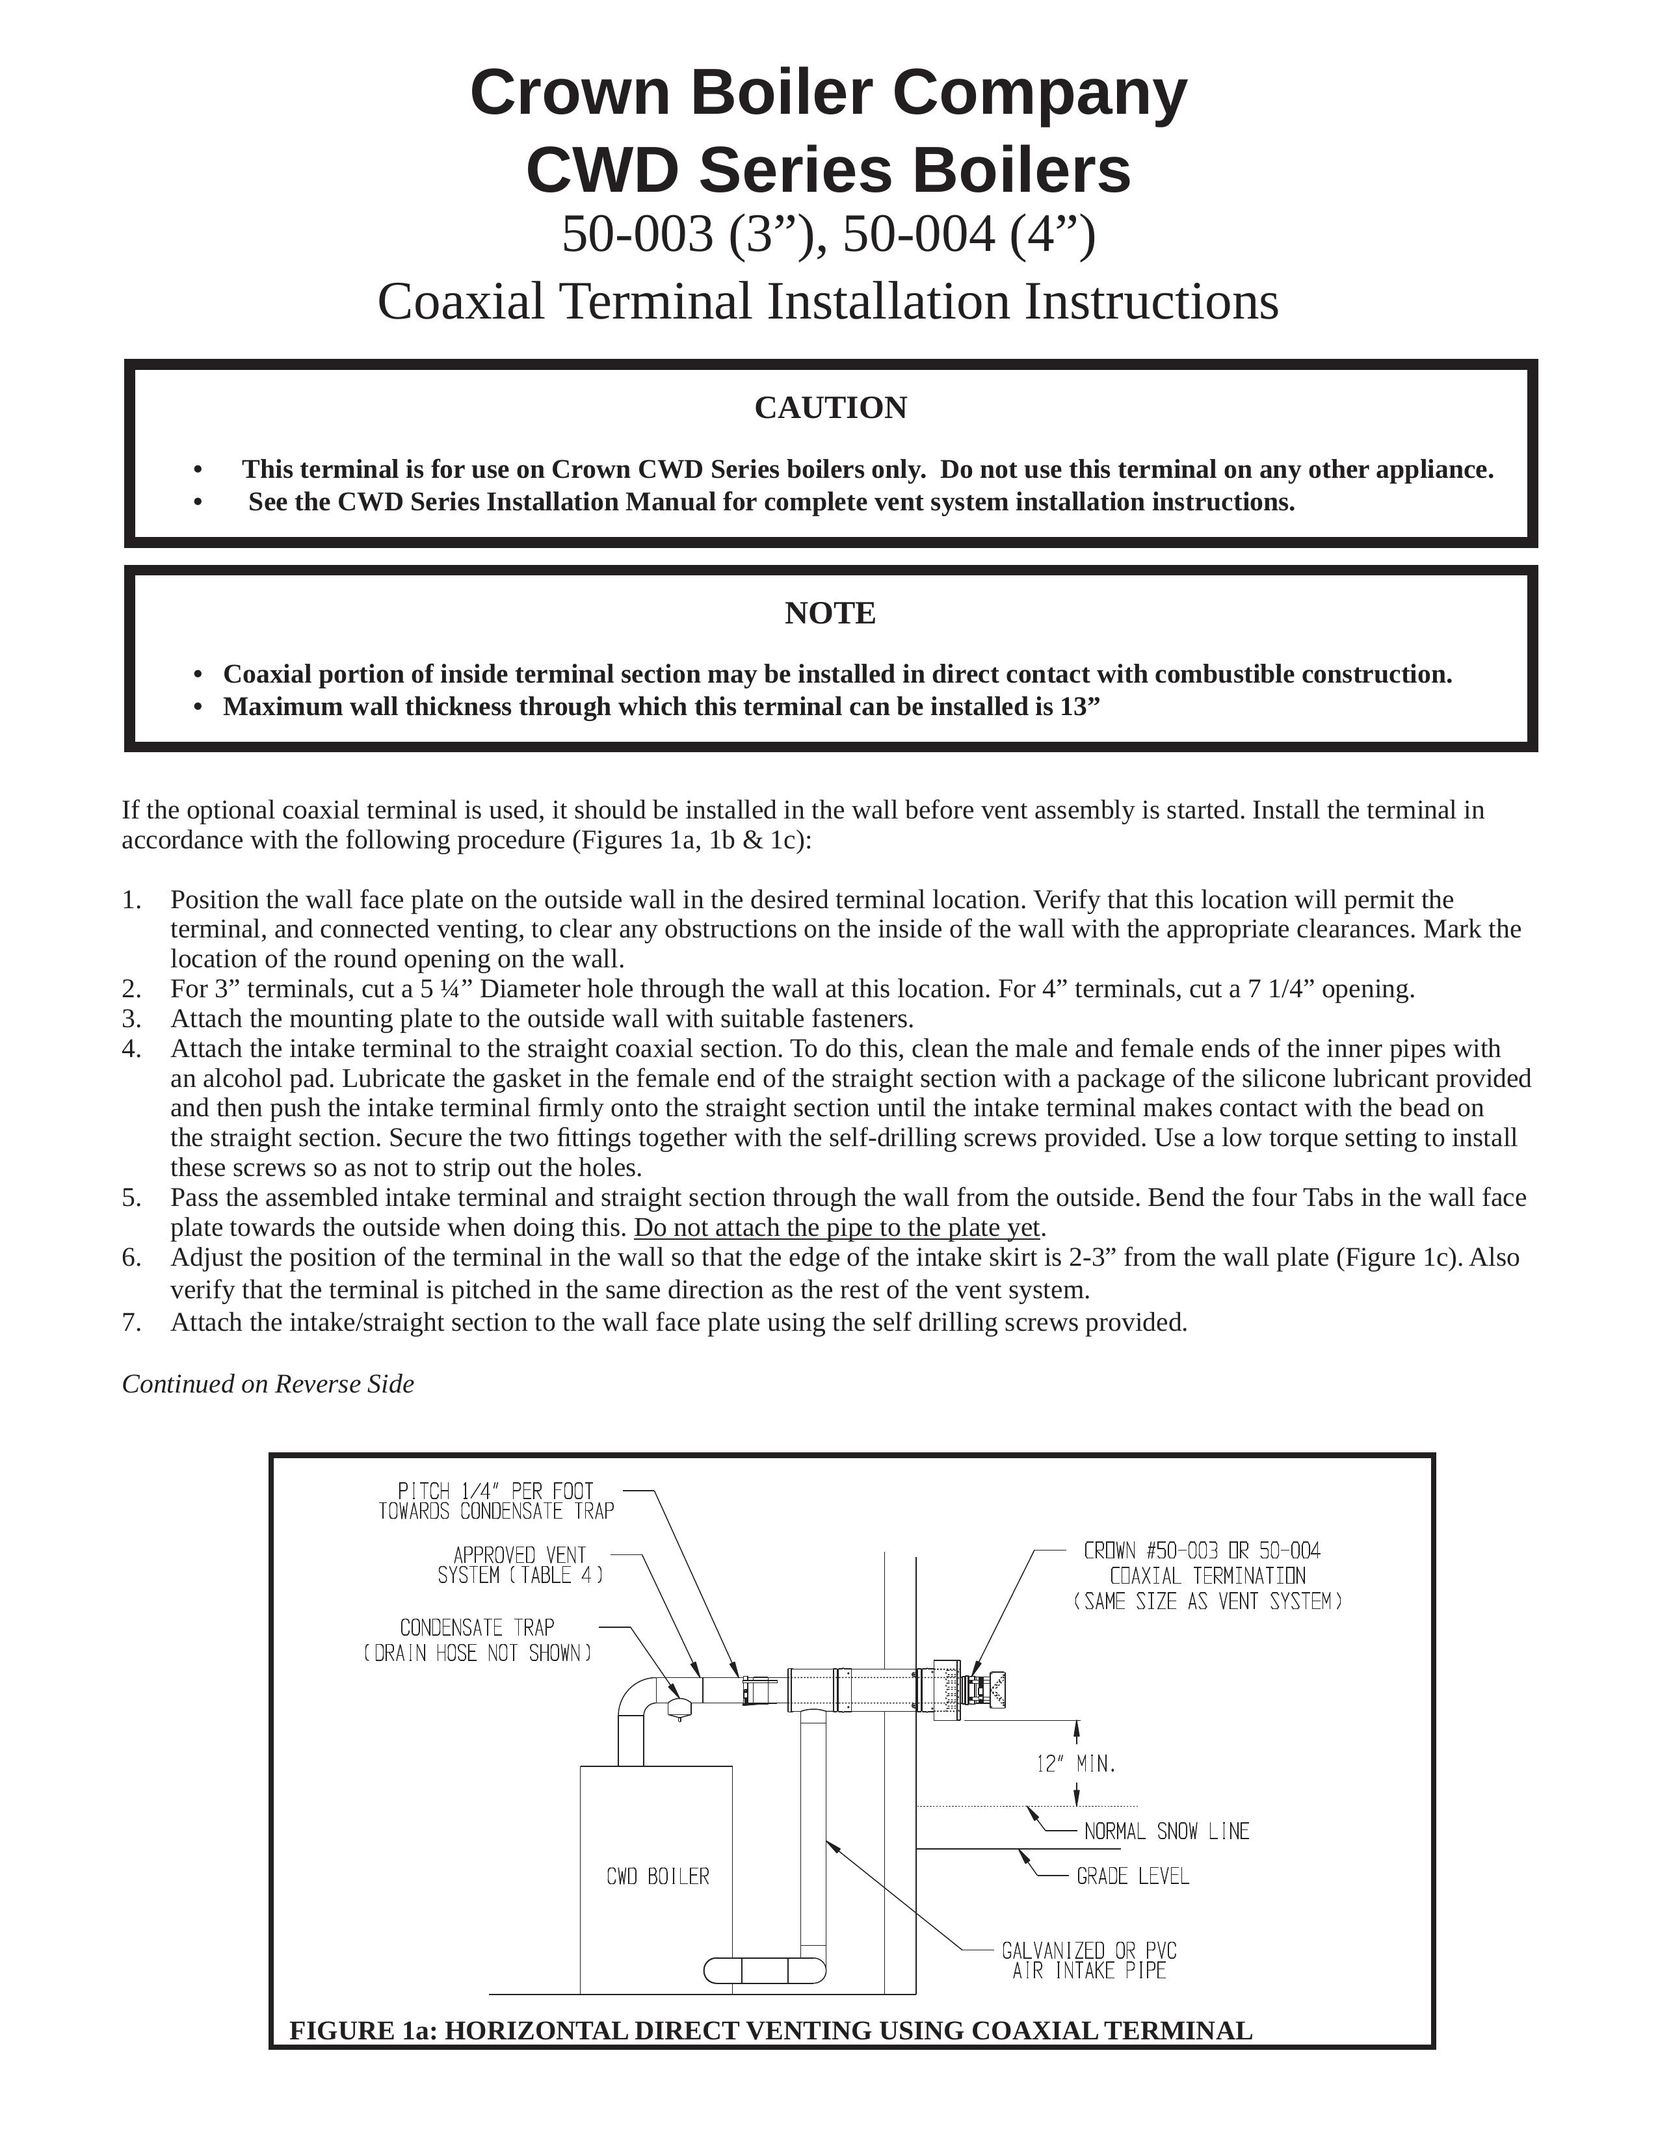 Crown Boiler 50-004 Boiler User Manual